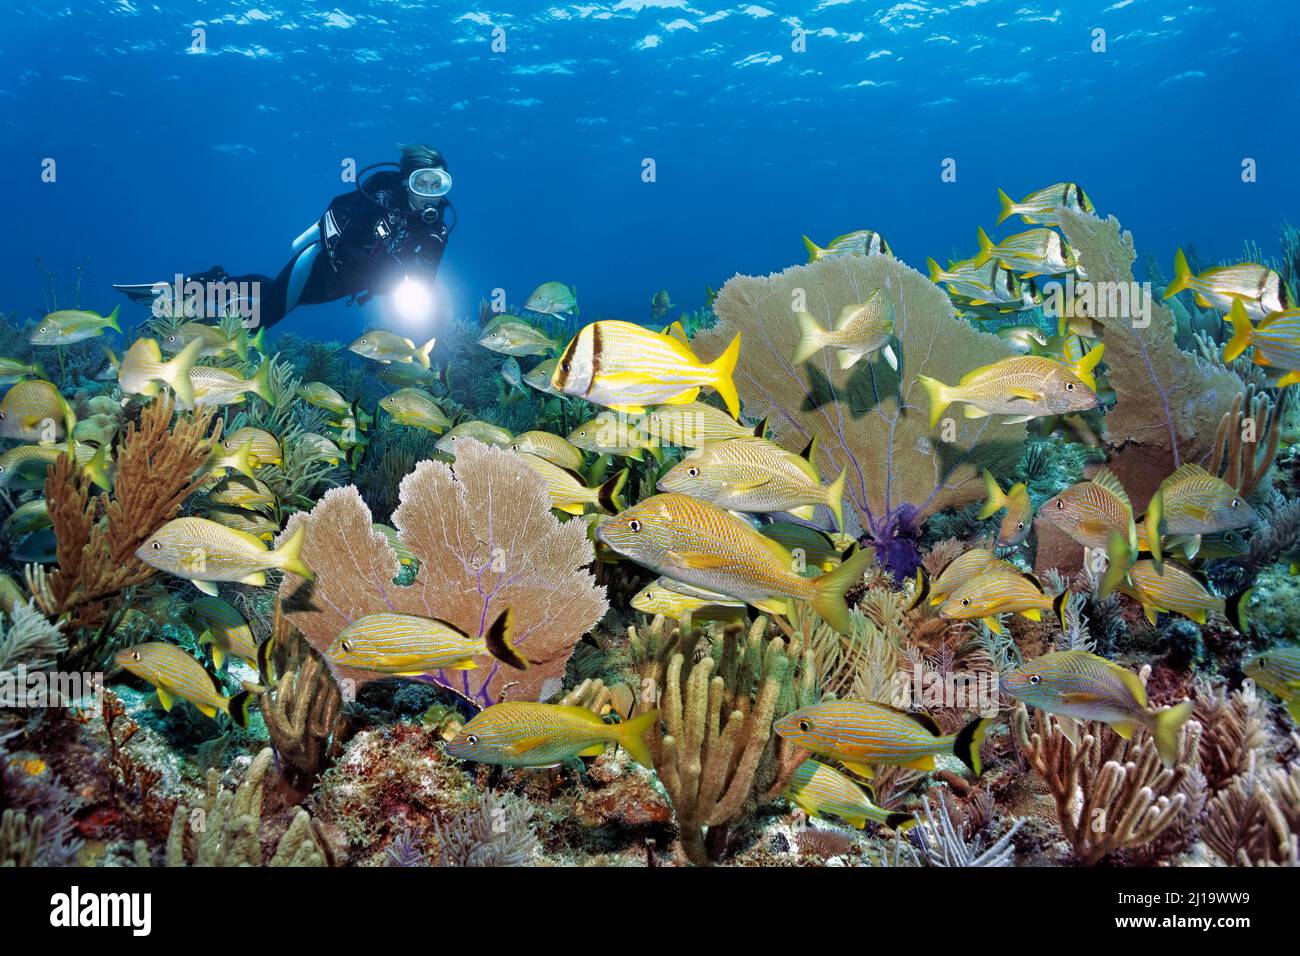 Plongeur regardant un récif de corail typique des Caraïbes avec une population intacte de divers coraux mous, ventilateur de Vénus, bâton géant de la mer à pores éclairés (Plexaurella nutans) Banque D'Images